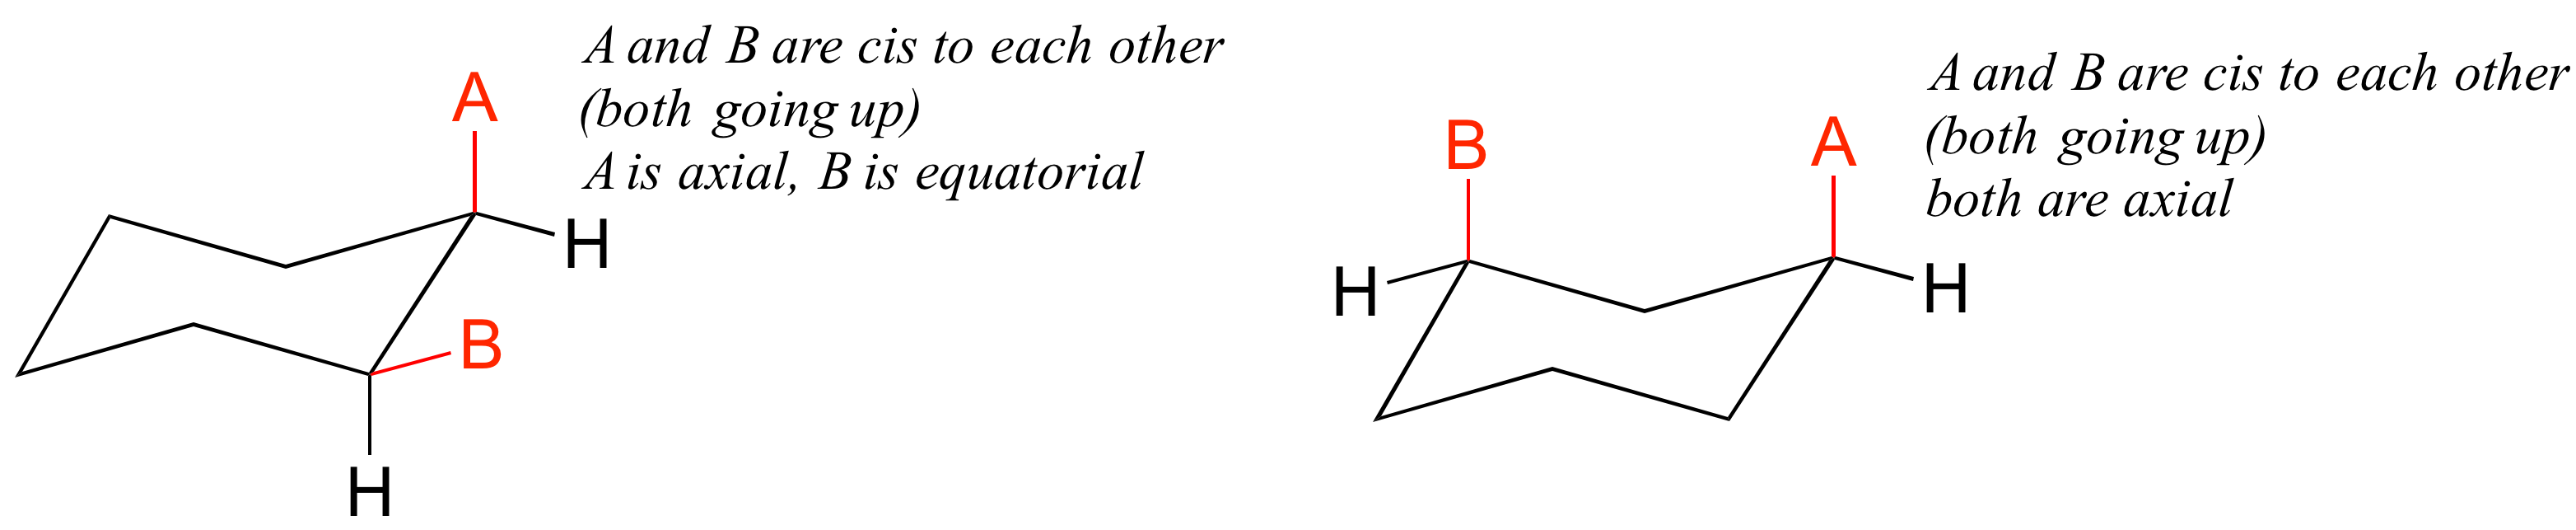 Izquierda: A y B son cis entre sí (ambos subiendo). Están a un carbono de distancia el uno del otro. A es axial, B es ecuatorial. Derecha: A y B son cis entre sí (ambos subiendo). Están a dos carbonos el uno del otro. Ambos son axiales.